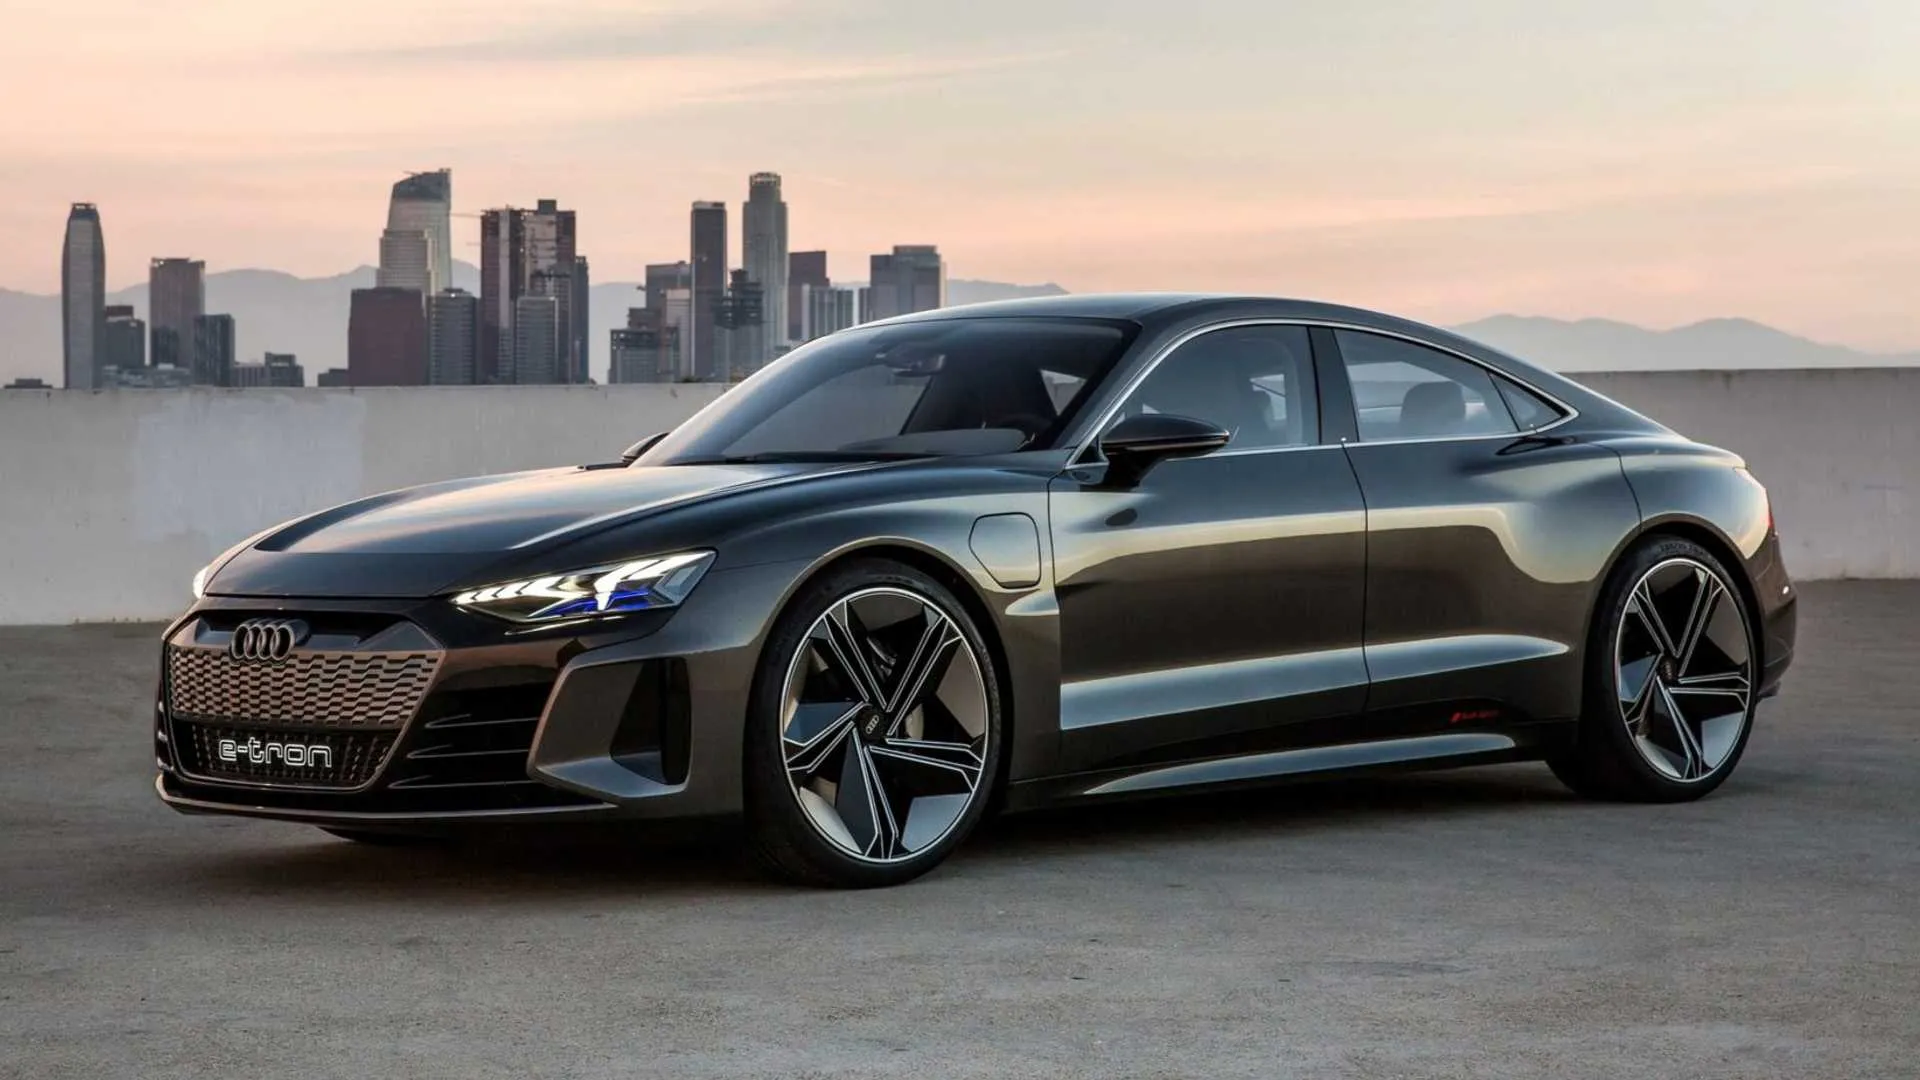 Audi hà lanciatu u so e-Tron GT, una splendida vittura elettrica pensata per cumpete cù Tesla, cù un prezzu di basa di $ 100,000.